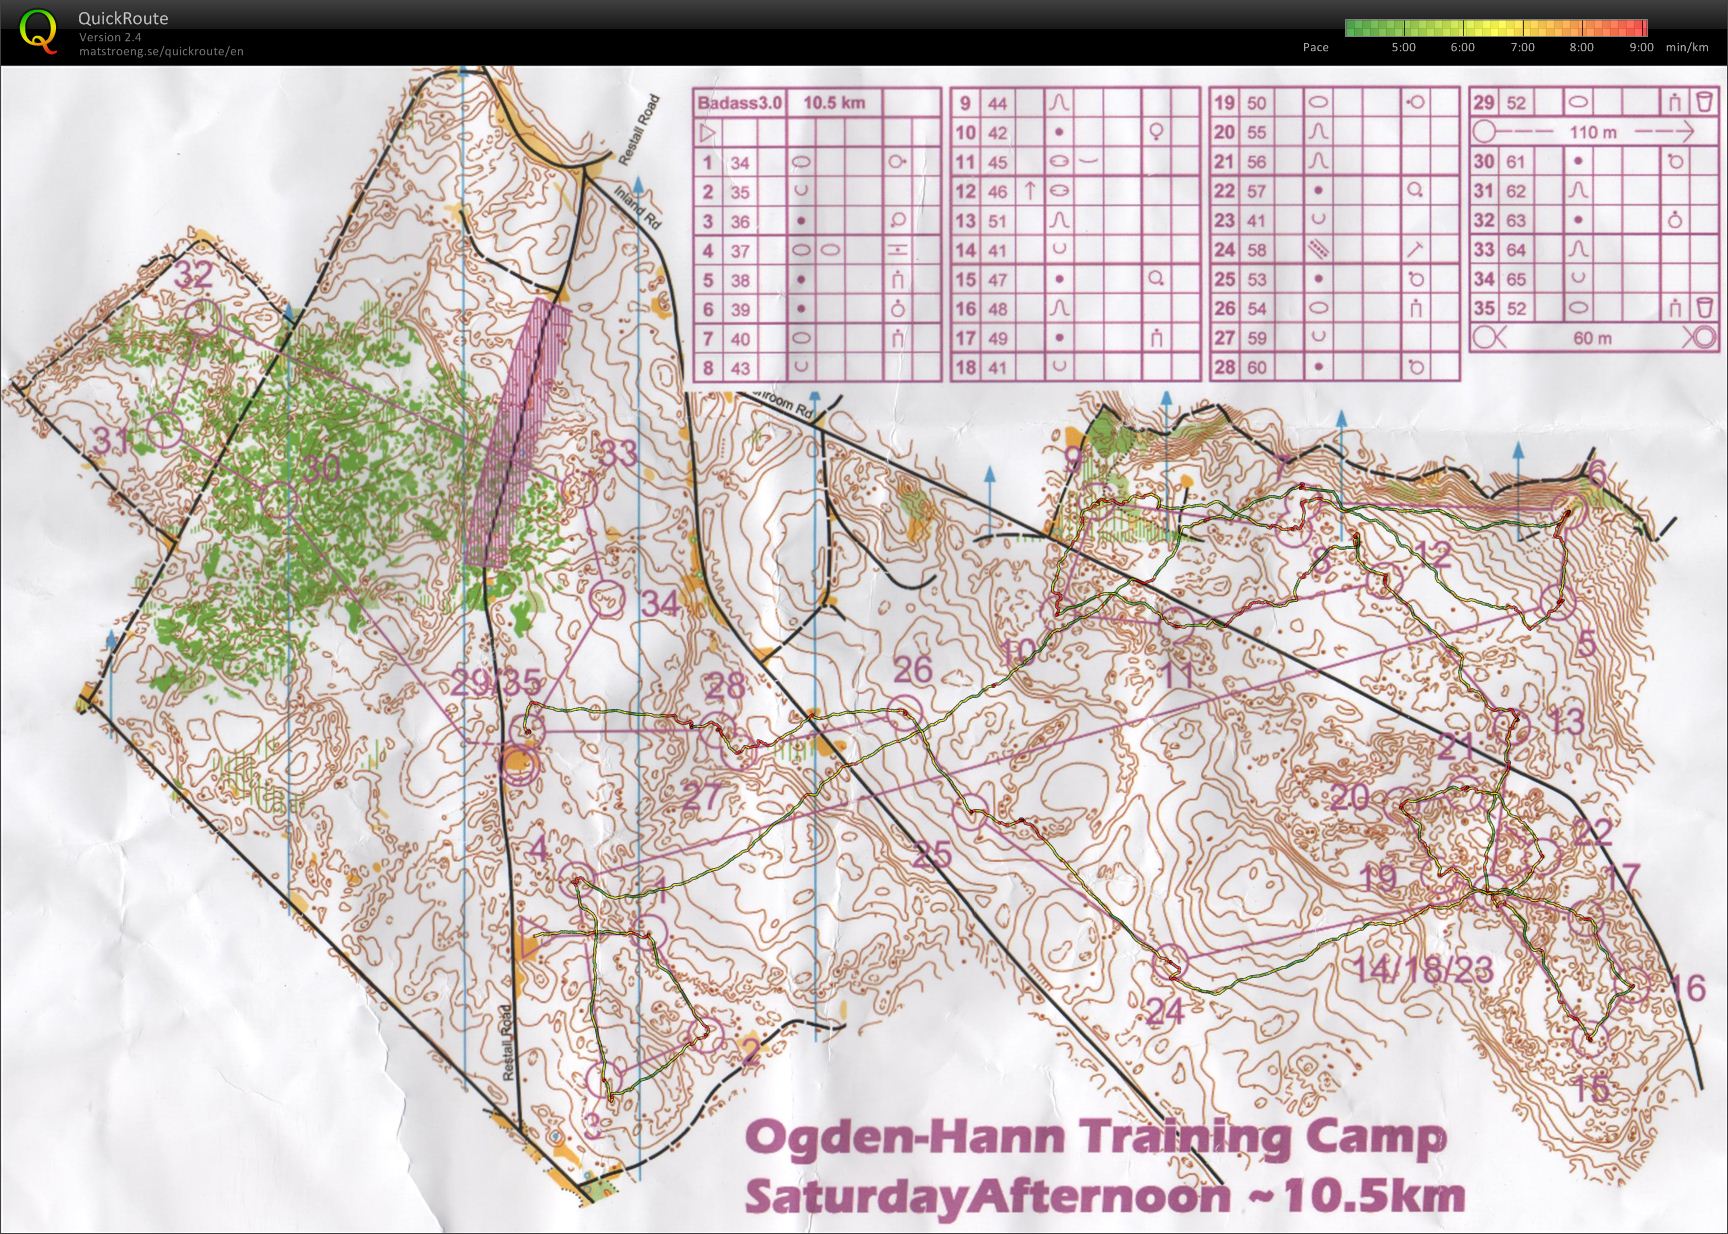 Ogden-Hann Training Camp - Badass 3.0 (16/03/2012)